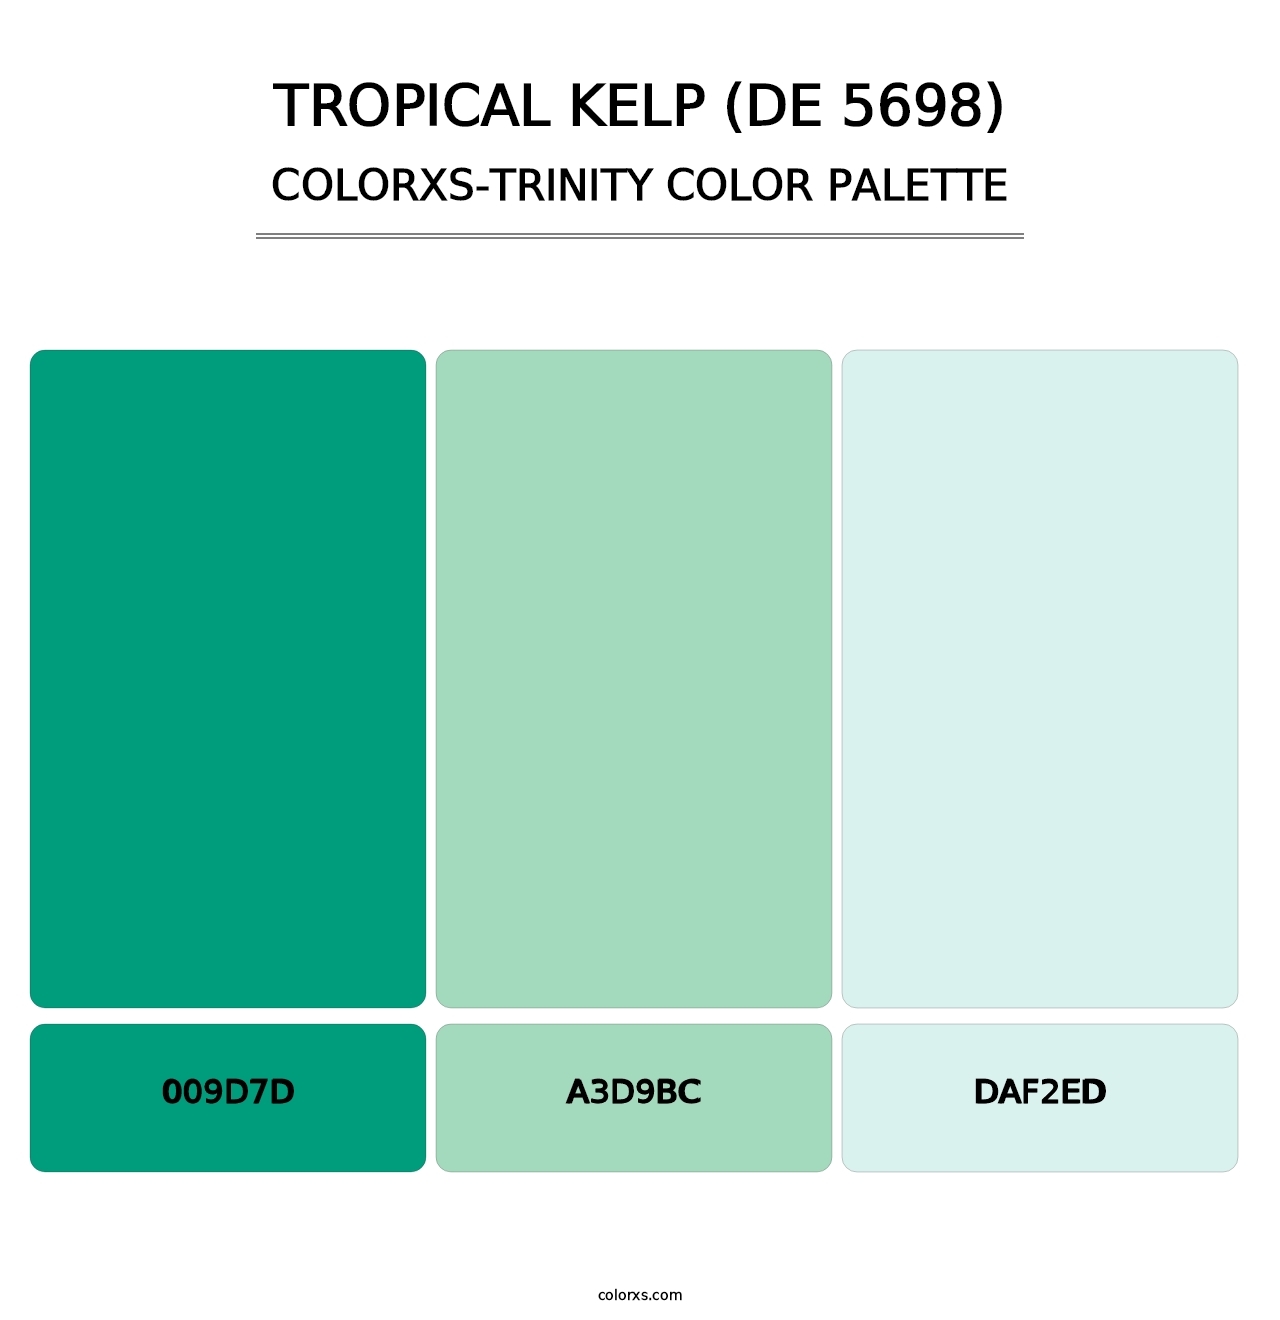 Tropical Kelp (DE 5698) - Colorxs Trinity Palette